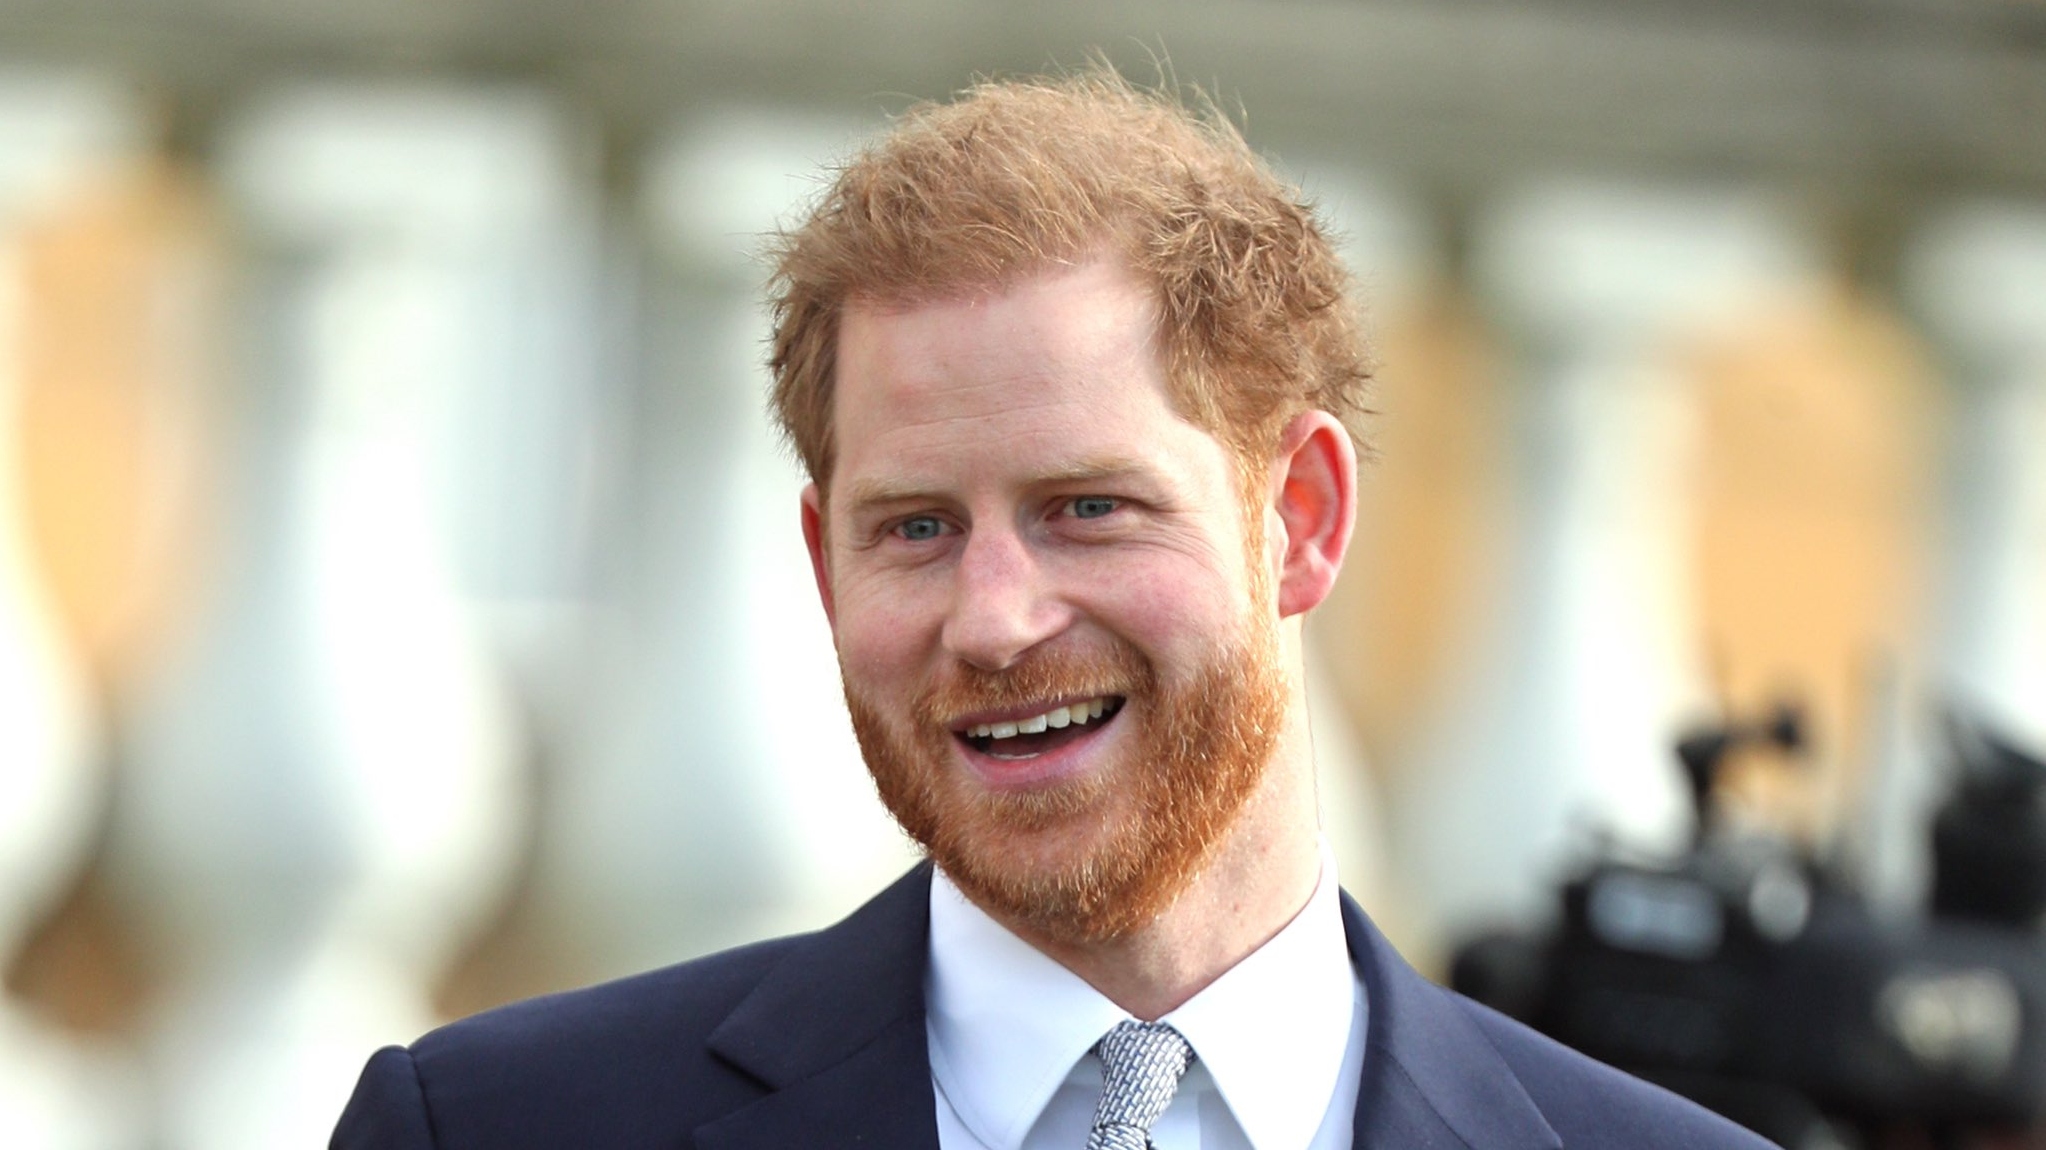 Família real remove título de 'Sua Alteza' do príncipe Harry; entenda